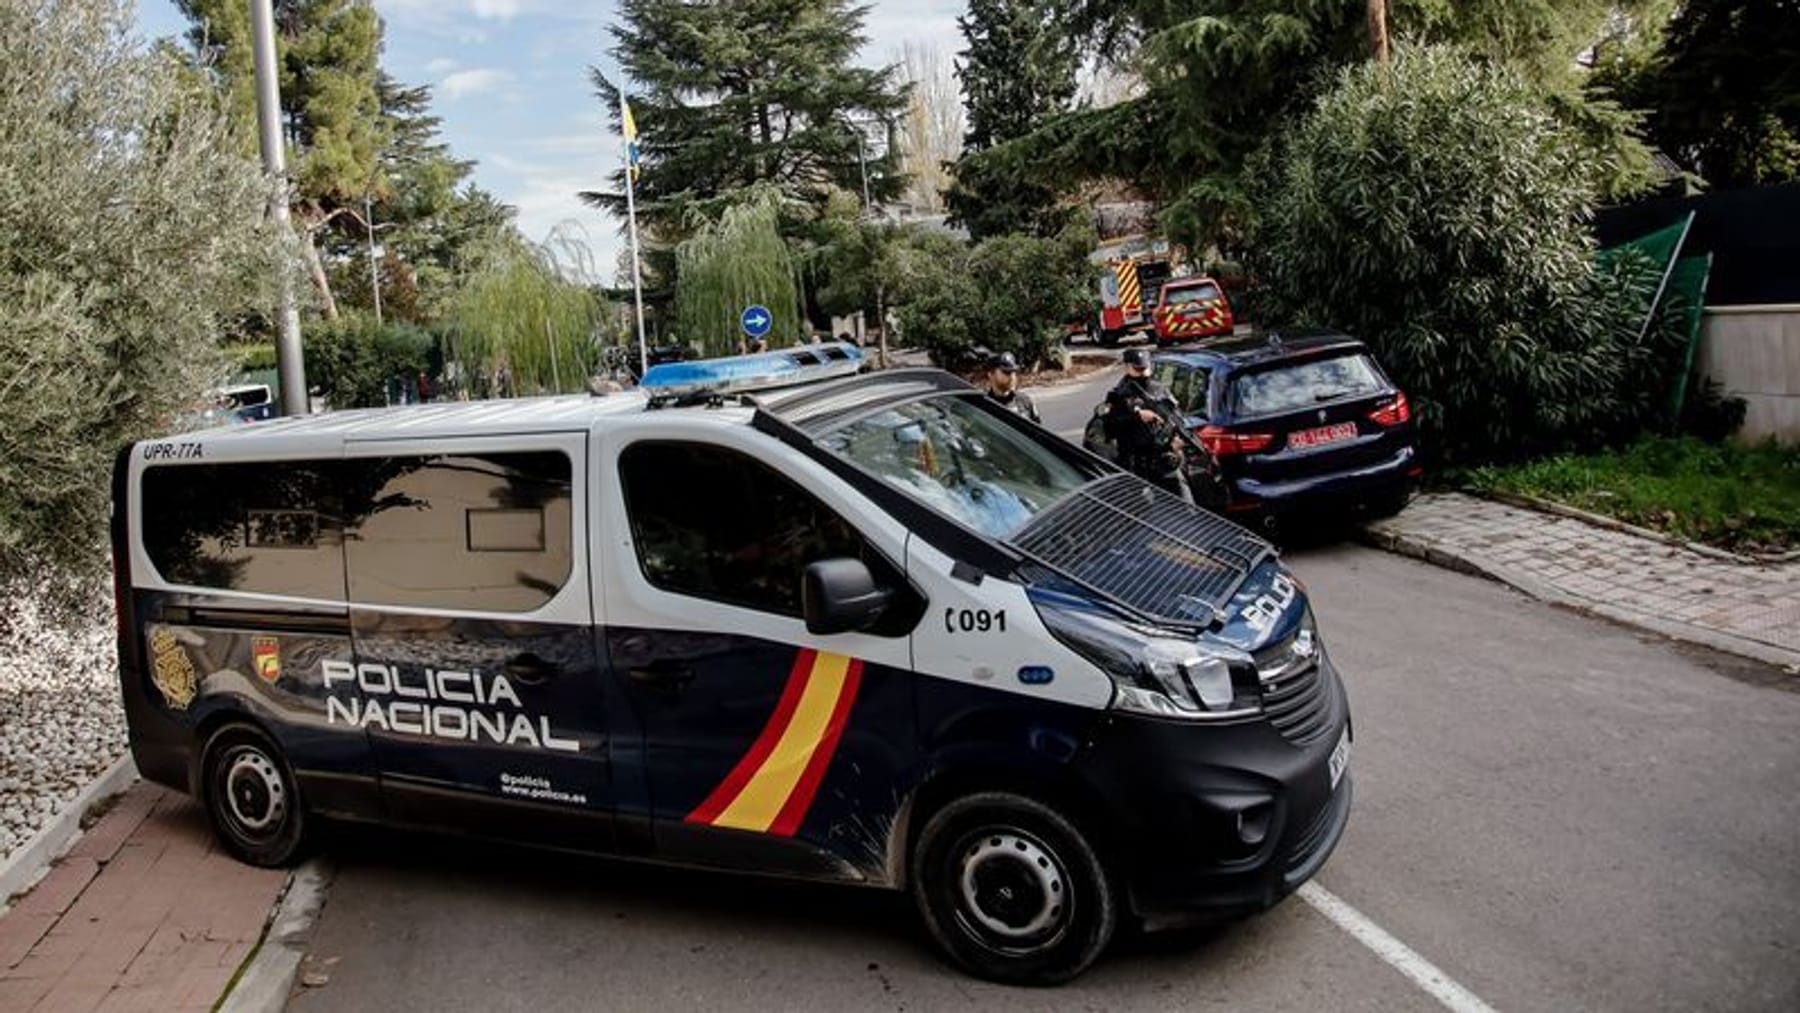 Russische Gruppe hinter Briefbomben in Spanien vermutet